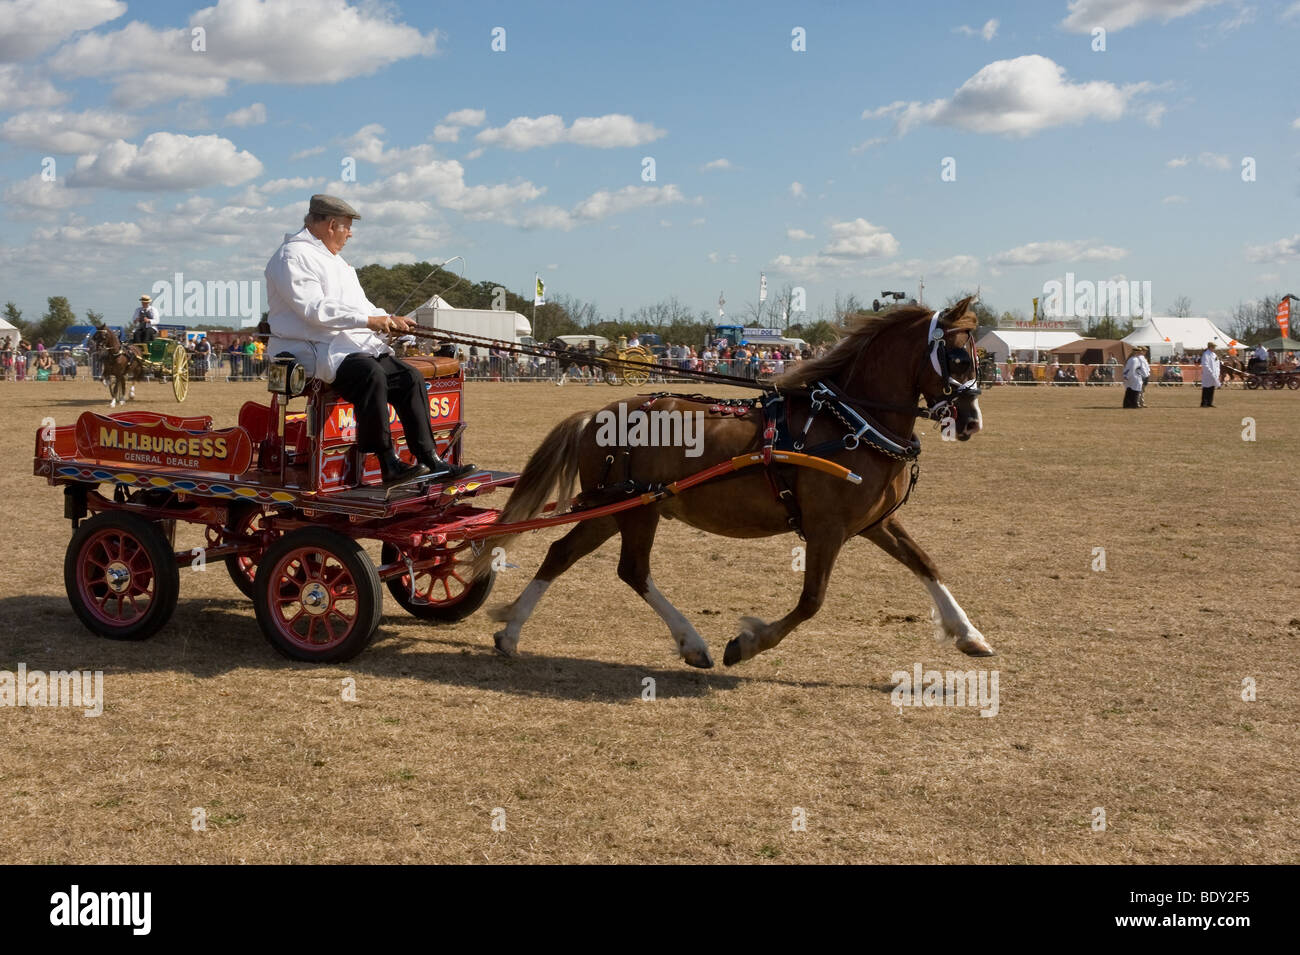 Un cheval tirant un petit panier décoré dans un pays montrent dans l'Essex. Banque D'Images